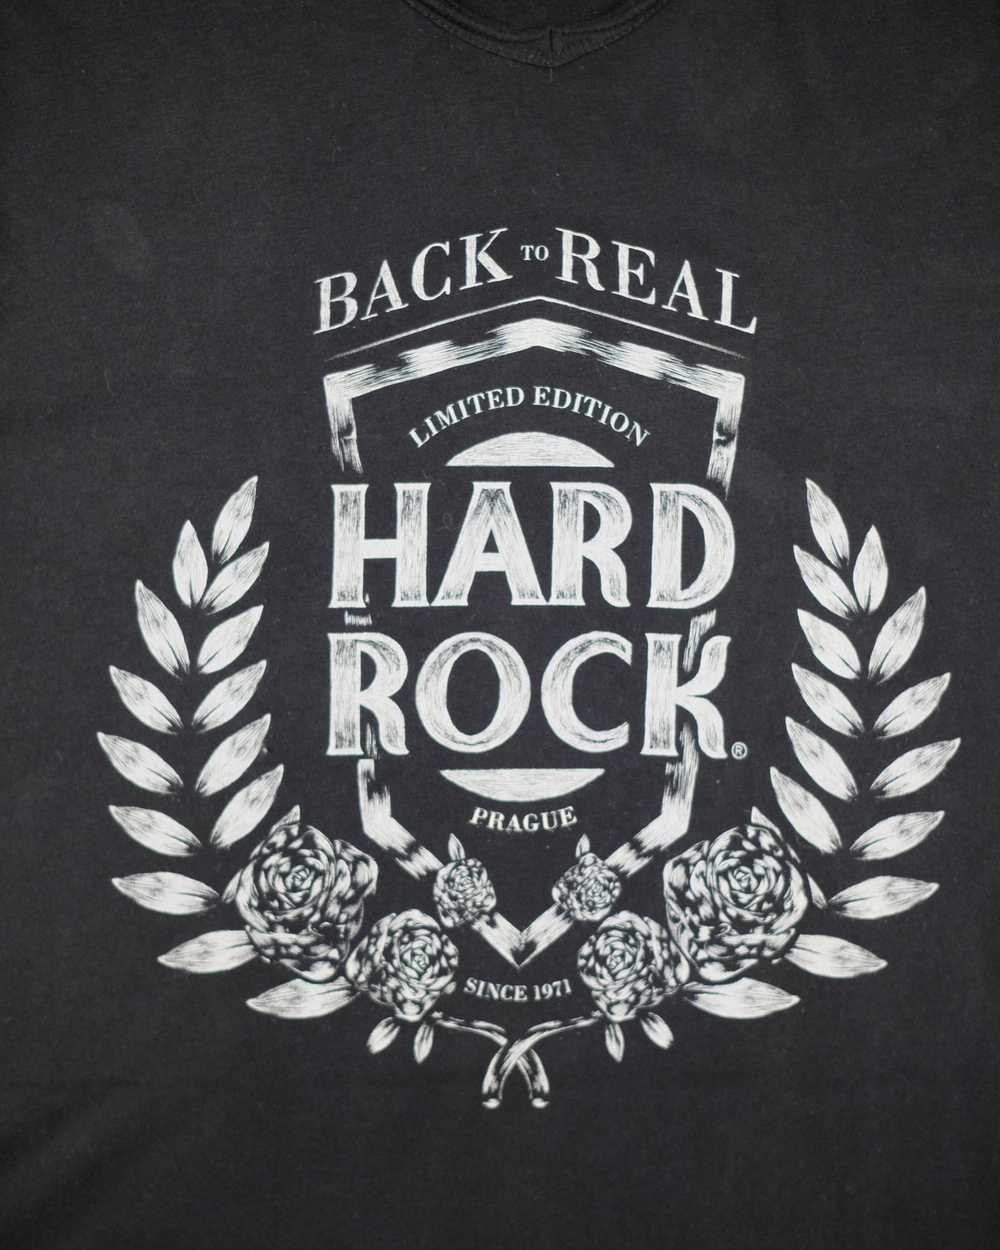 Hard Rock Cafe Hard Rock Cafe Prague limited edit… - image 3